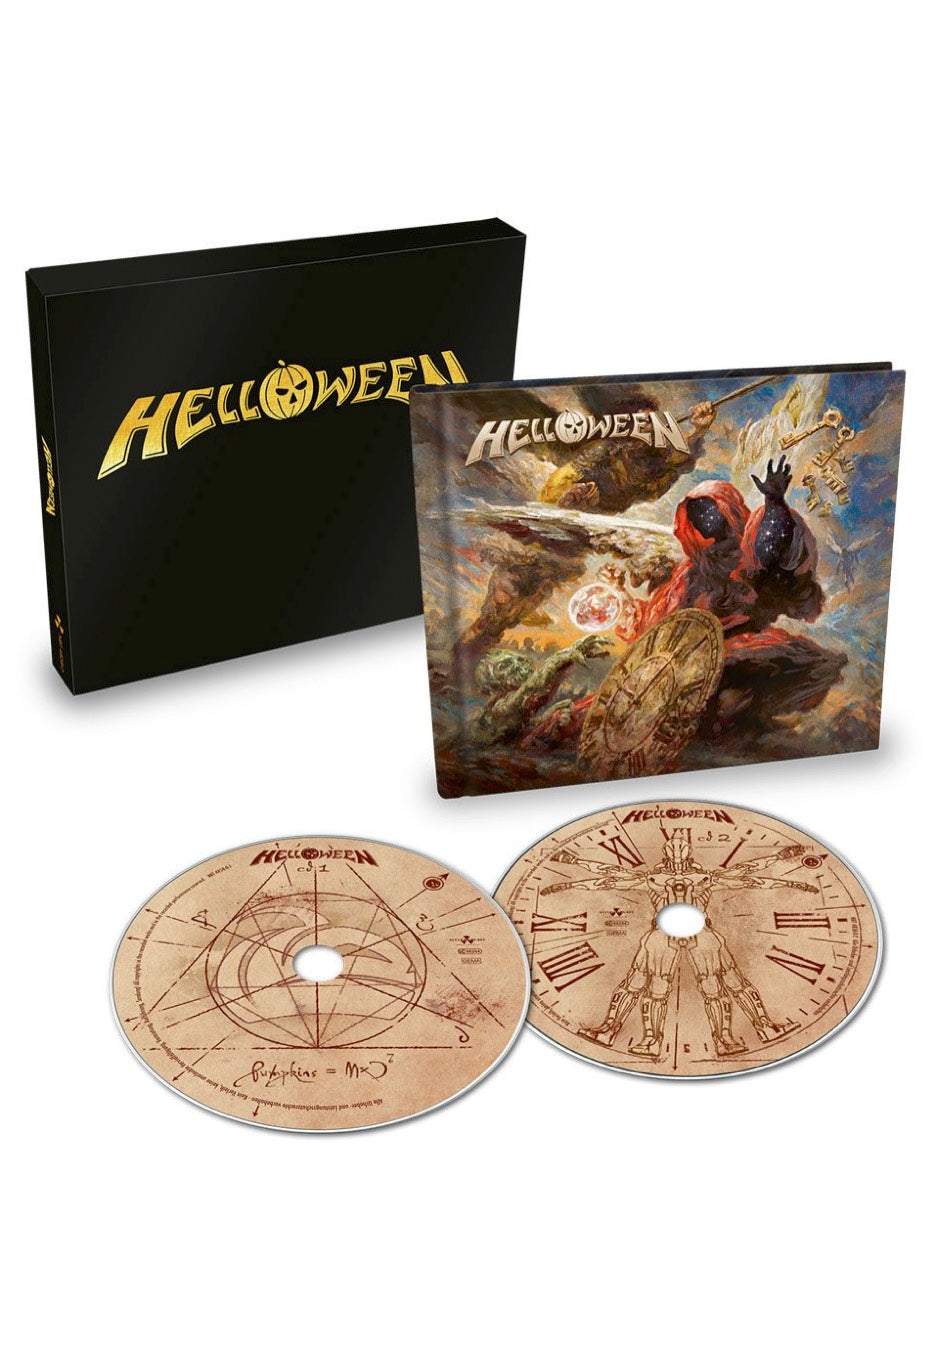 Helloween - Helloween - Digipak 2 CD